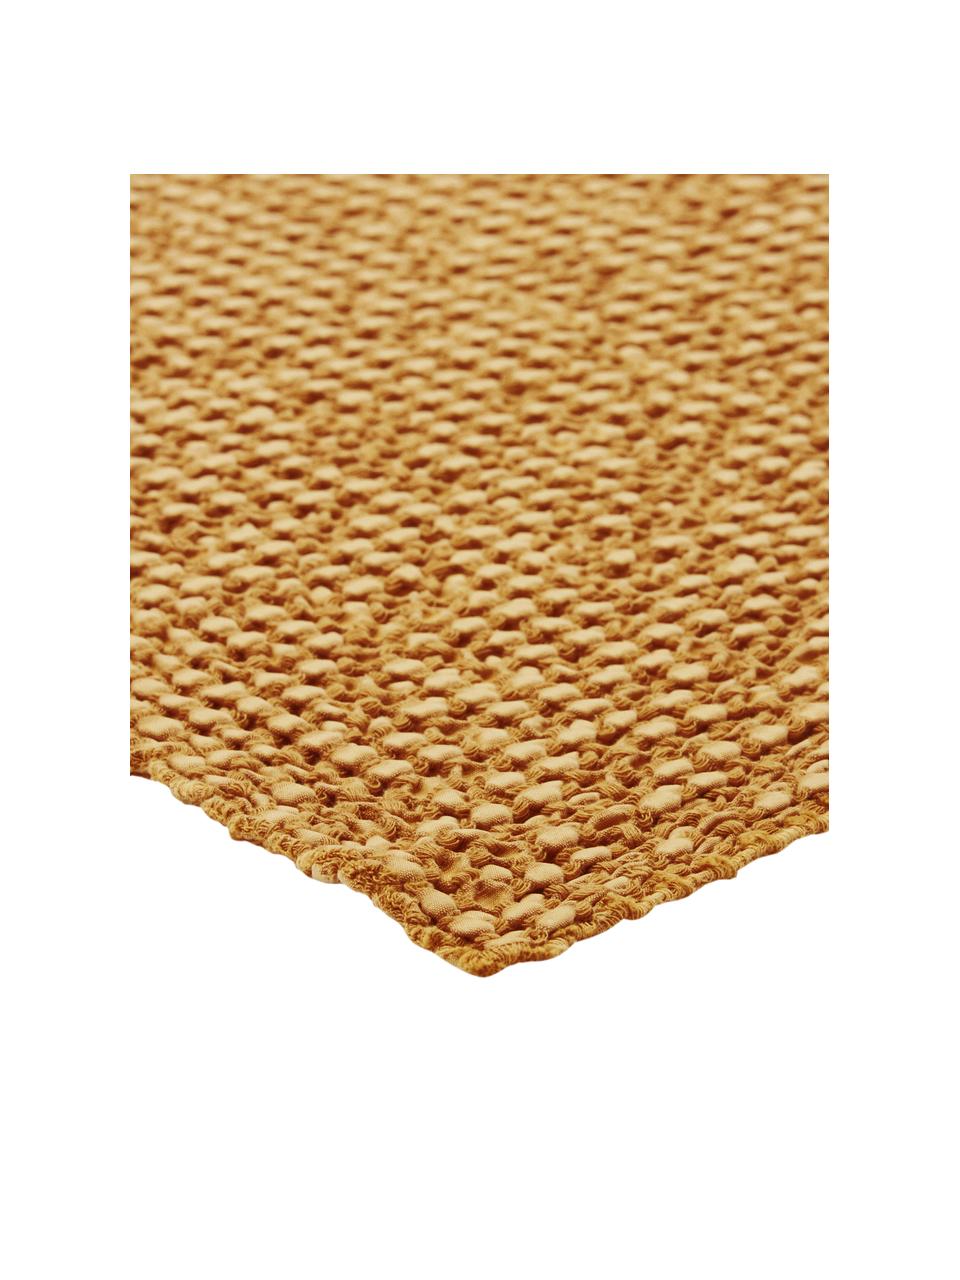 Baumwoll-Plaid Vigo in Goldgelb mit strukturierter Oberfläche, 100% Baumwolle, Goldgelb, 140 x 200 cm